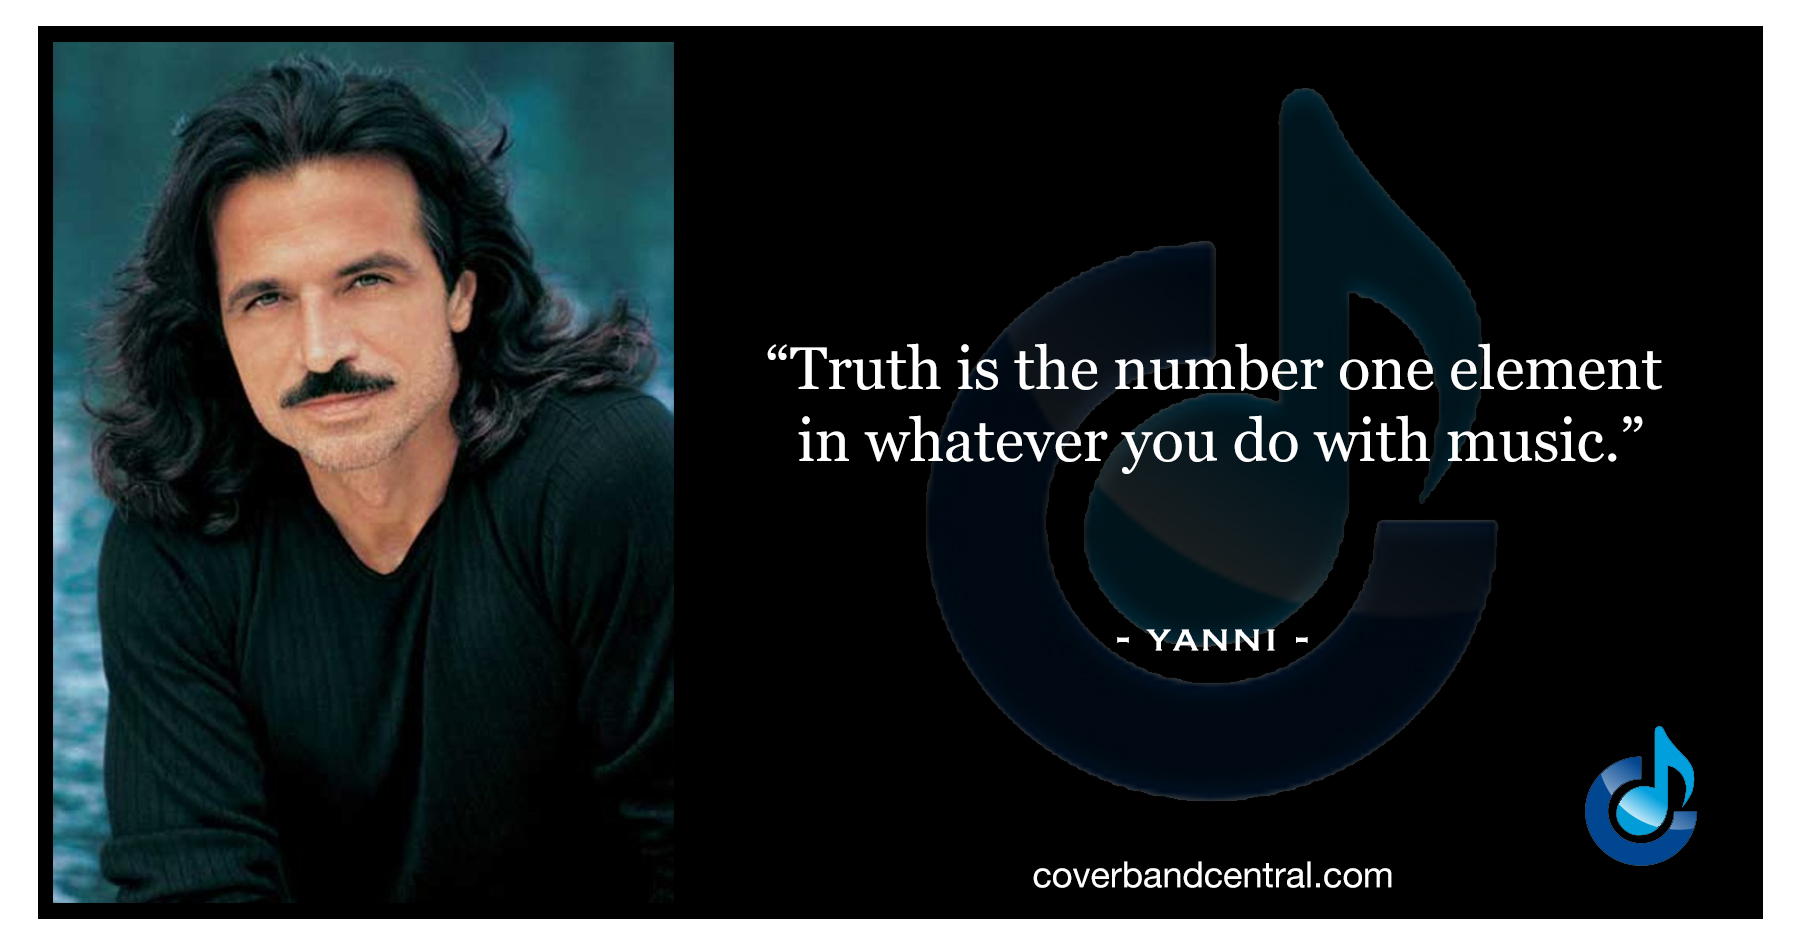 Yanni quote